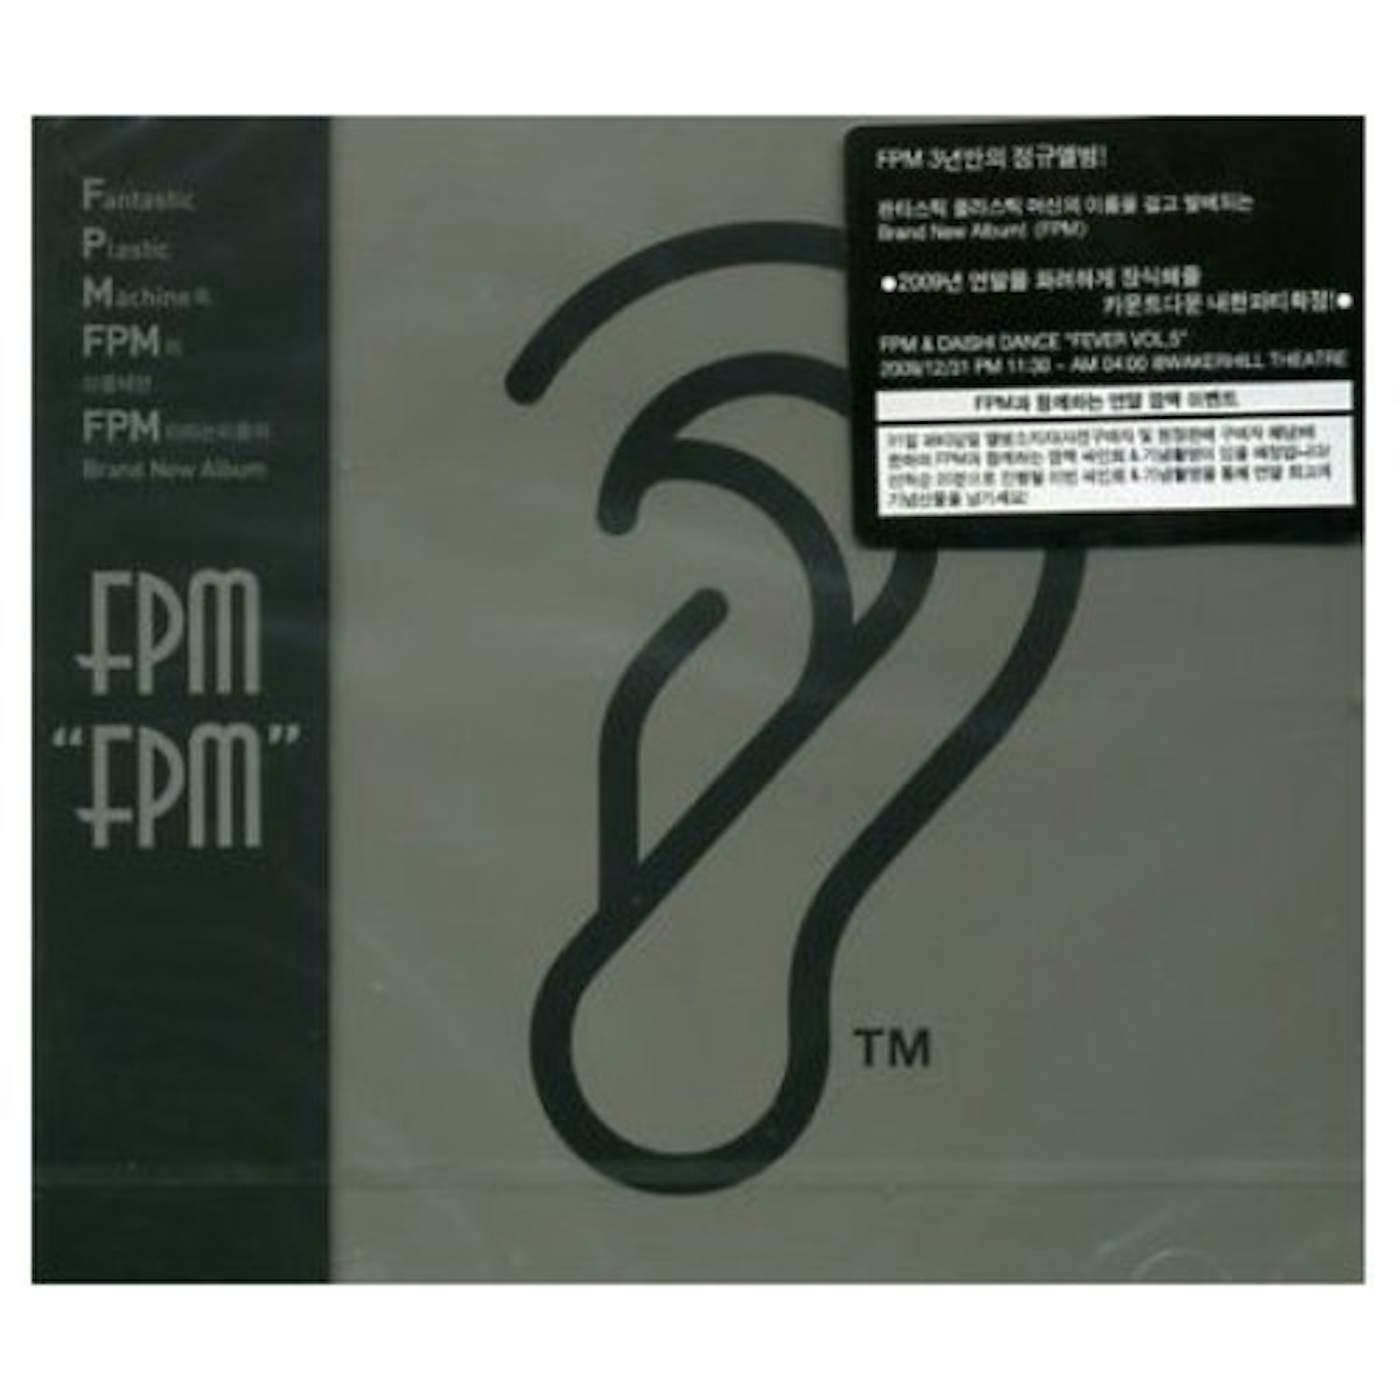 Fantastic Plastic Machine FPM CD